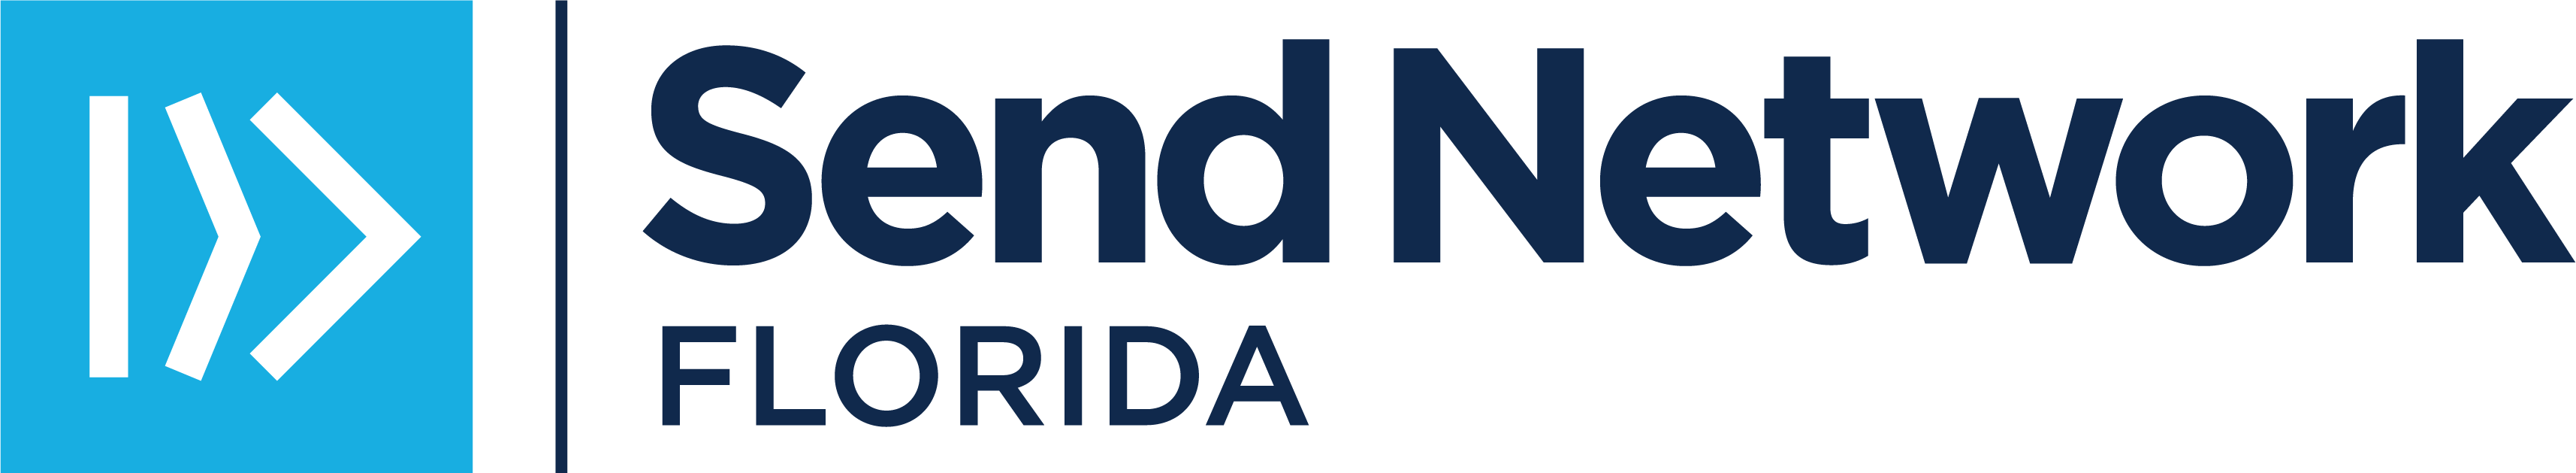 SN Florida Logo_BlueNavy